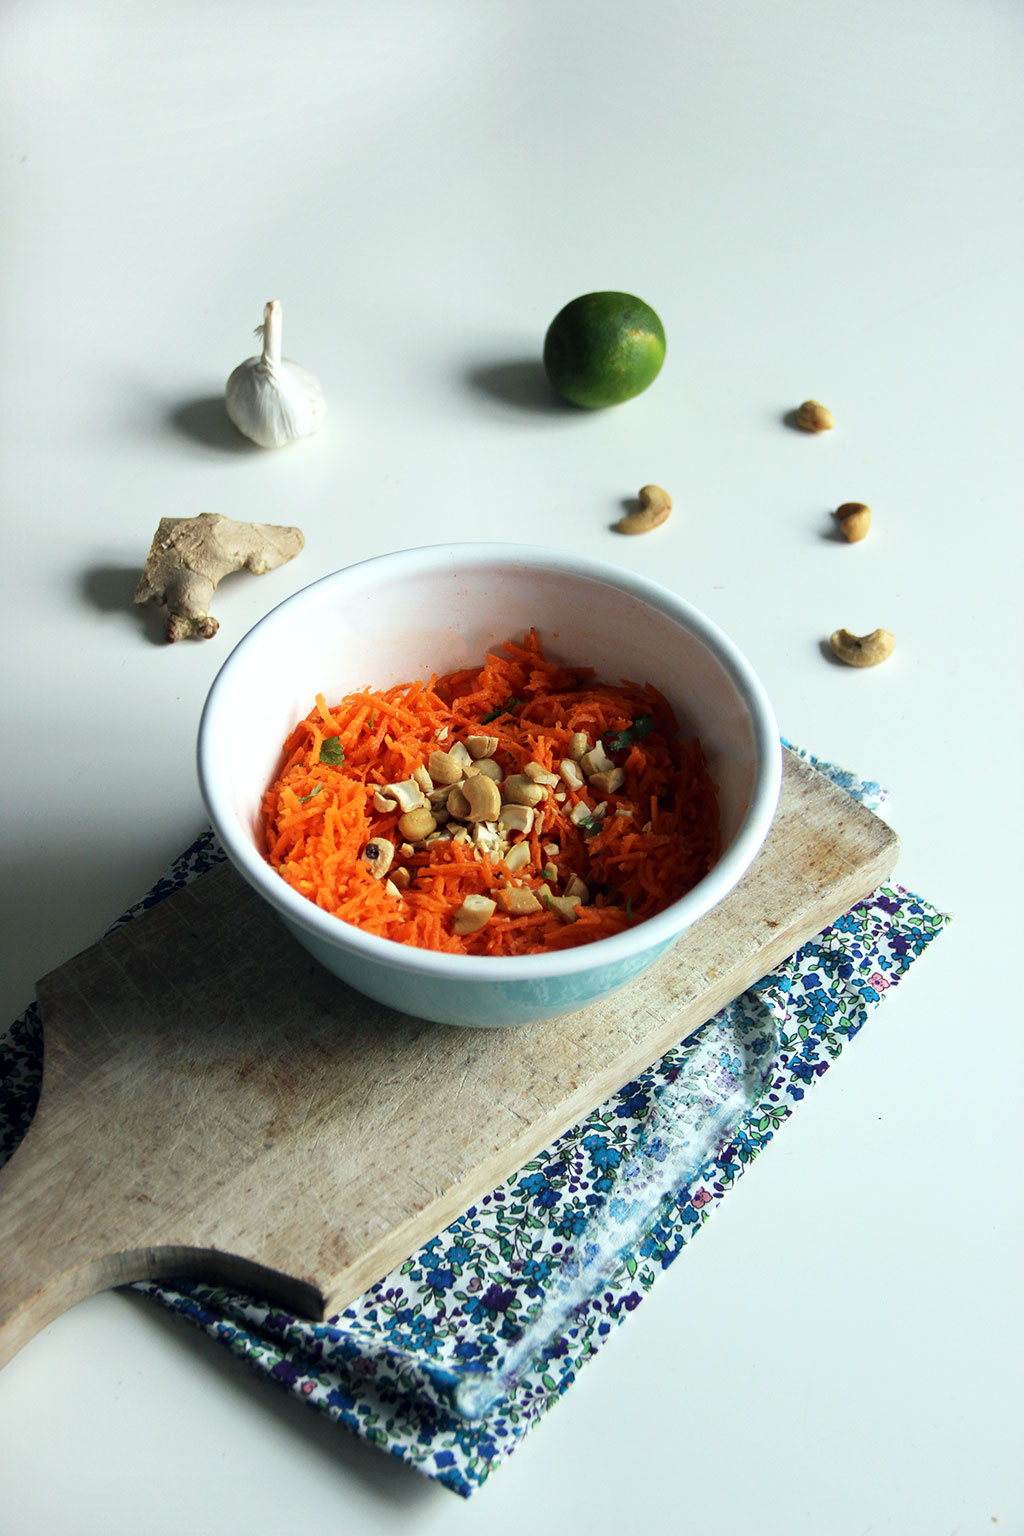 Salade de carottes râpées, recette et variantes - Cuisine Culinaire